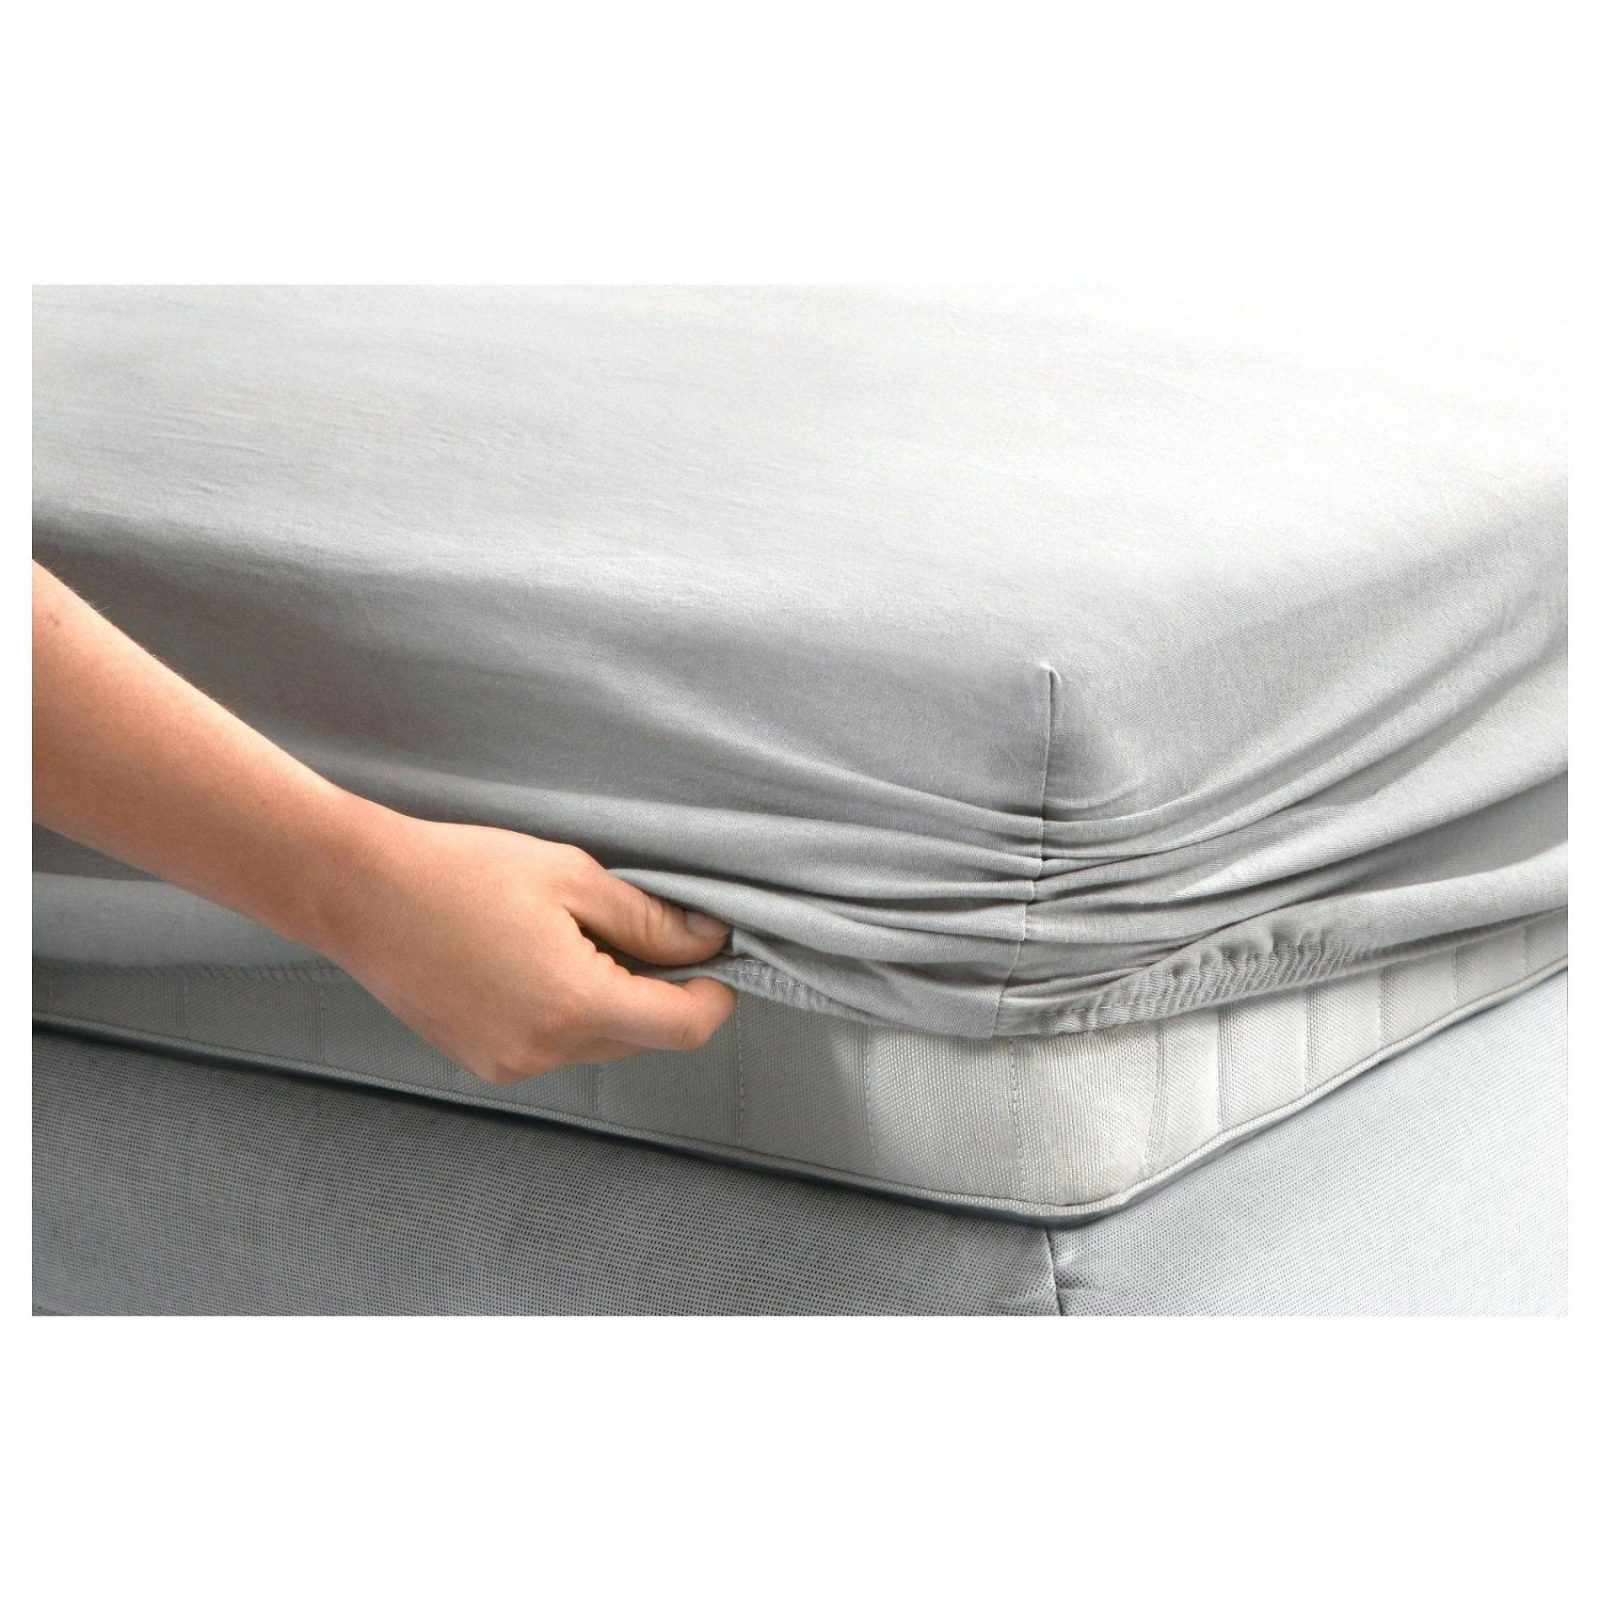 Dormia Matratze Dormia Matratzenbezug Waschen Dormia Matratze von Dormia Qualitäts Matratze Supercomfort 140 Test Bild